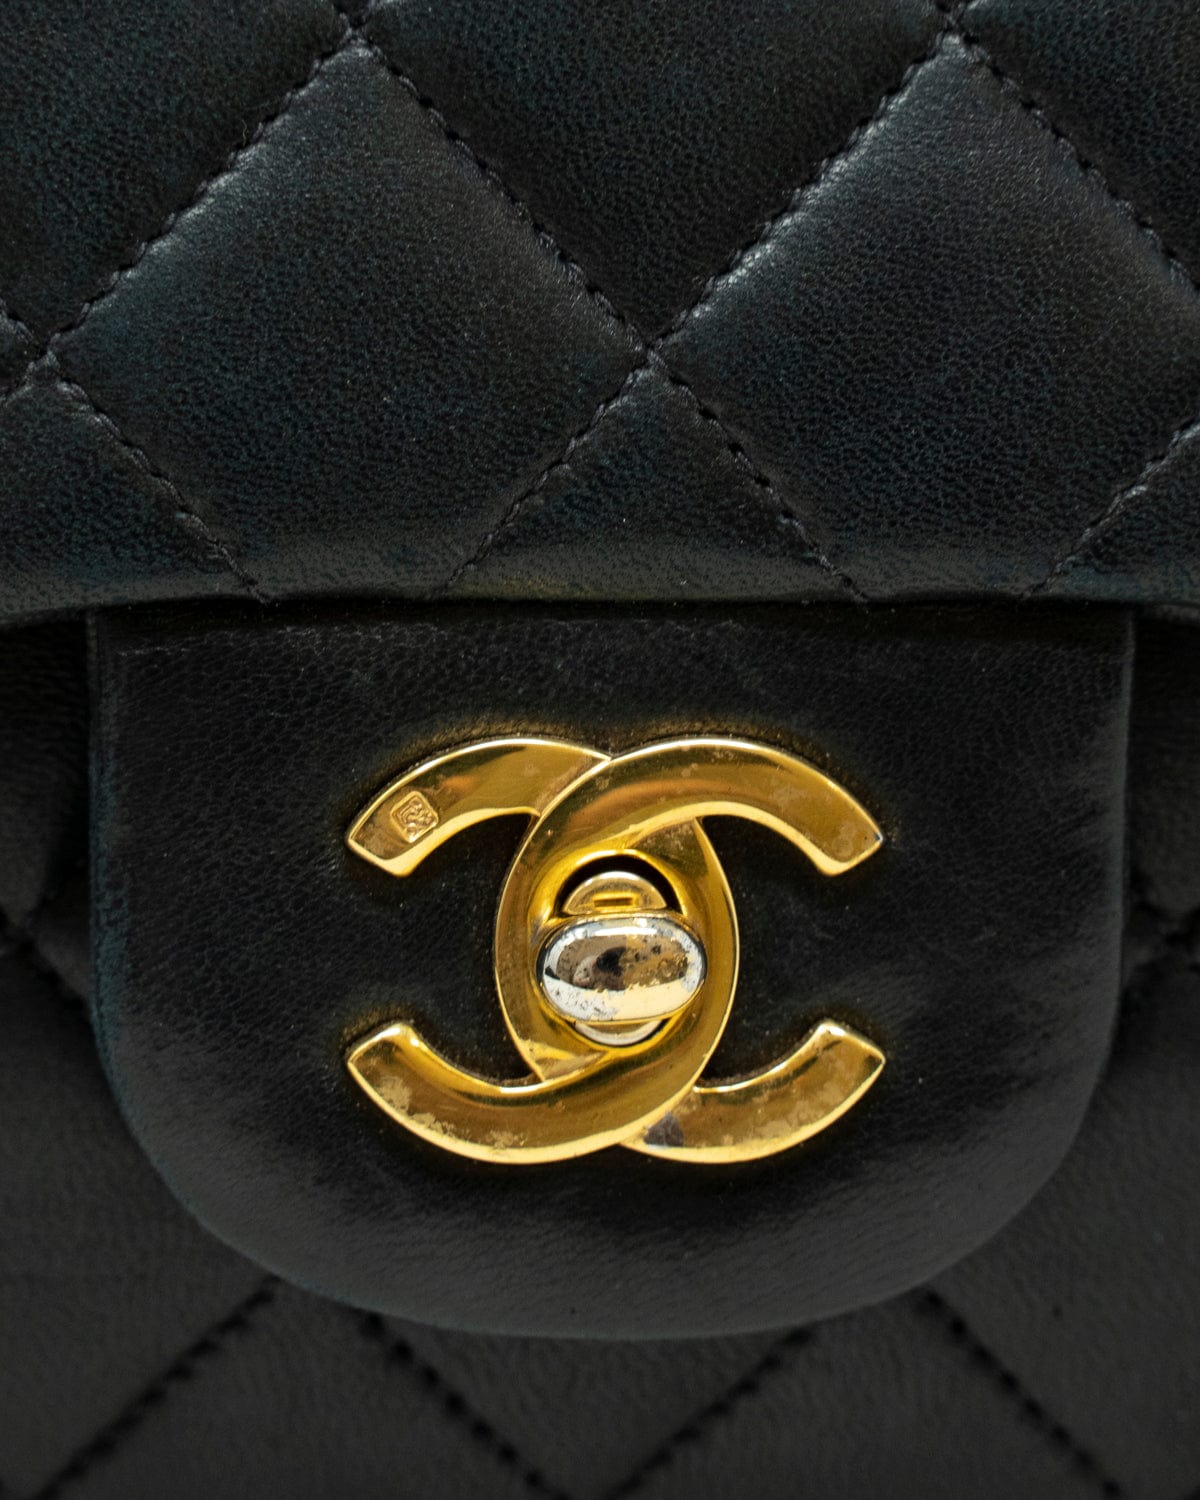 Chanel Chanel Black Lambskin 9 inch Classic Flap Bag GHW - AGL1787